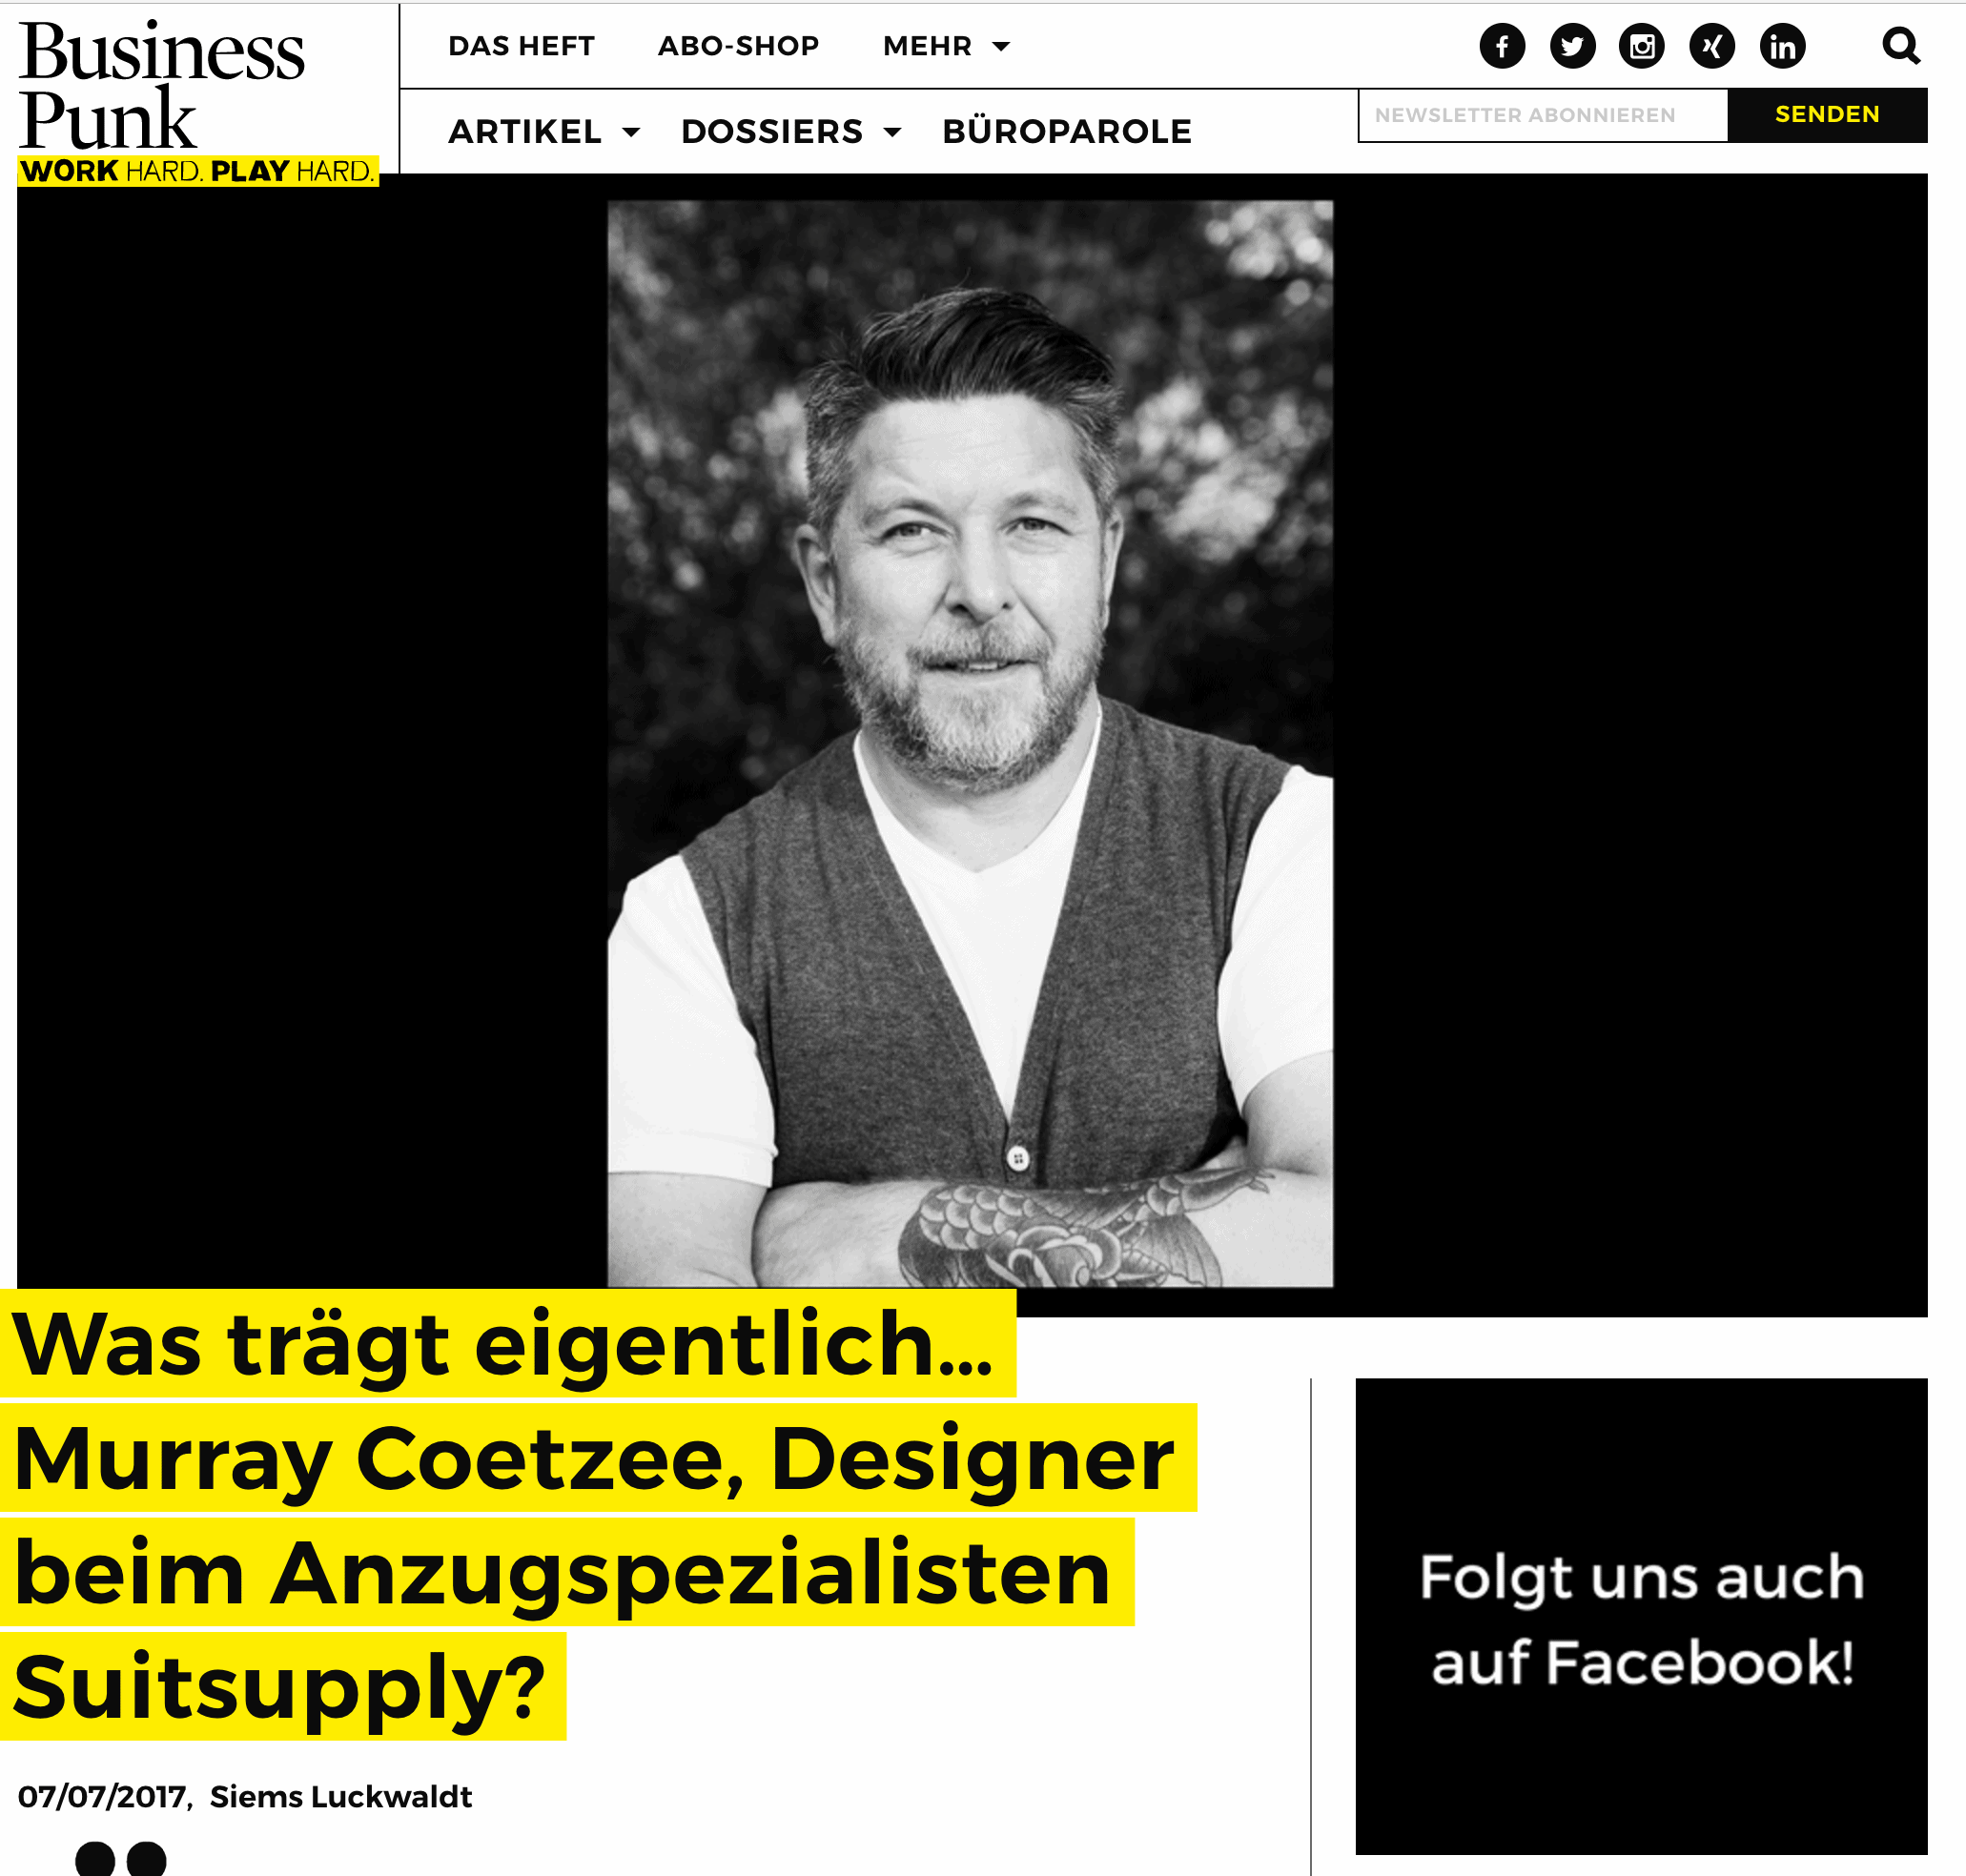 Was trägt eigentlich Murray Coetzee, Suitsupply (für Business-Punk.com)